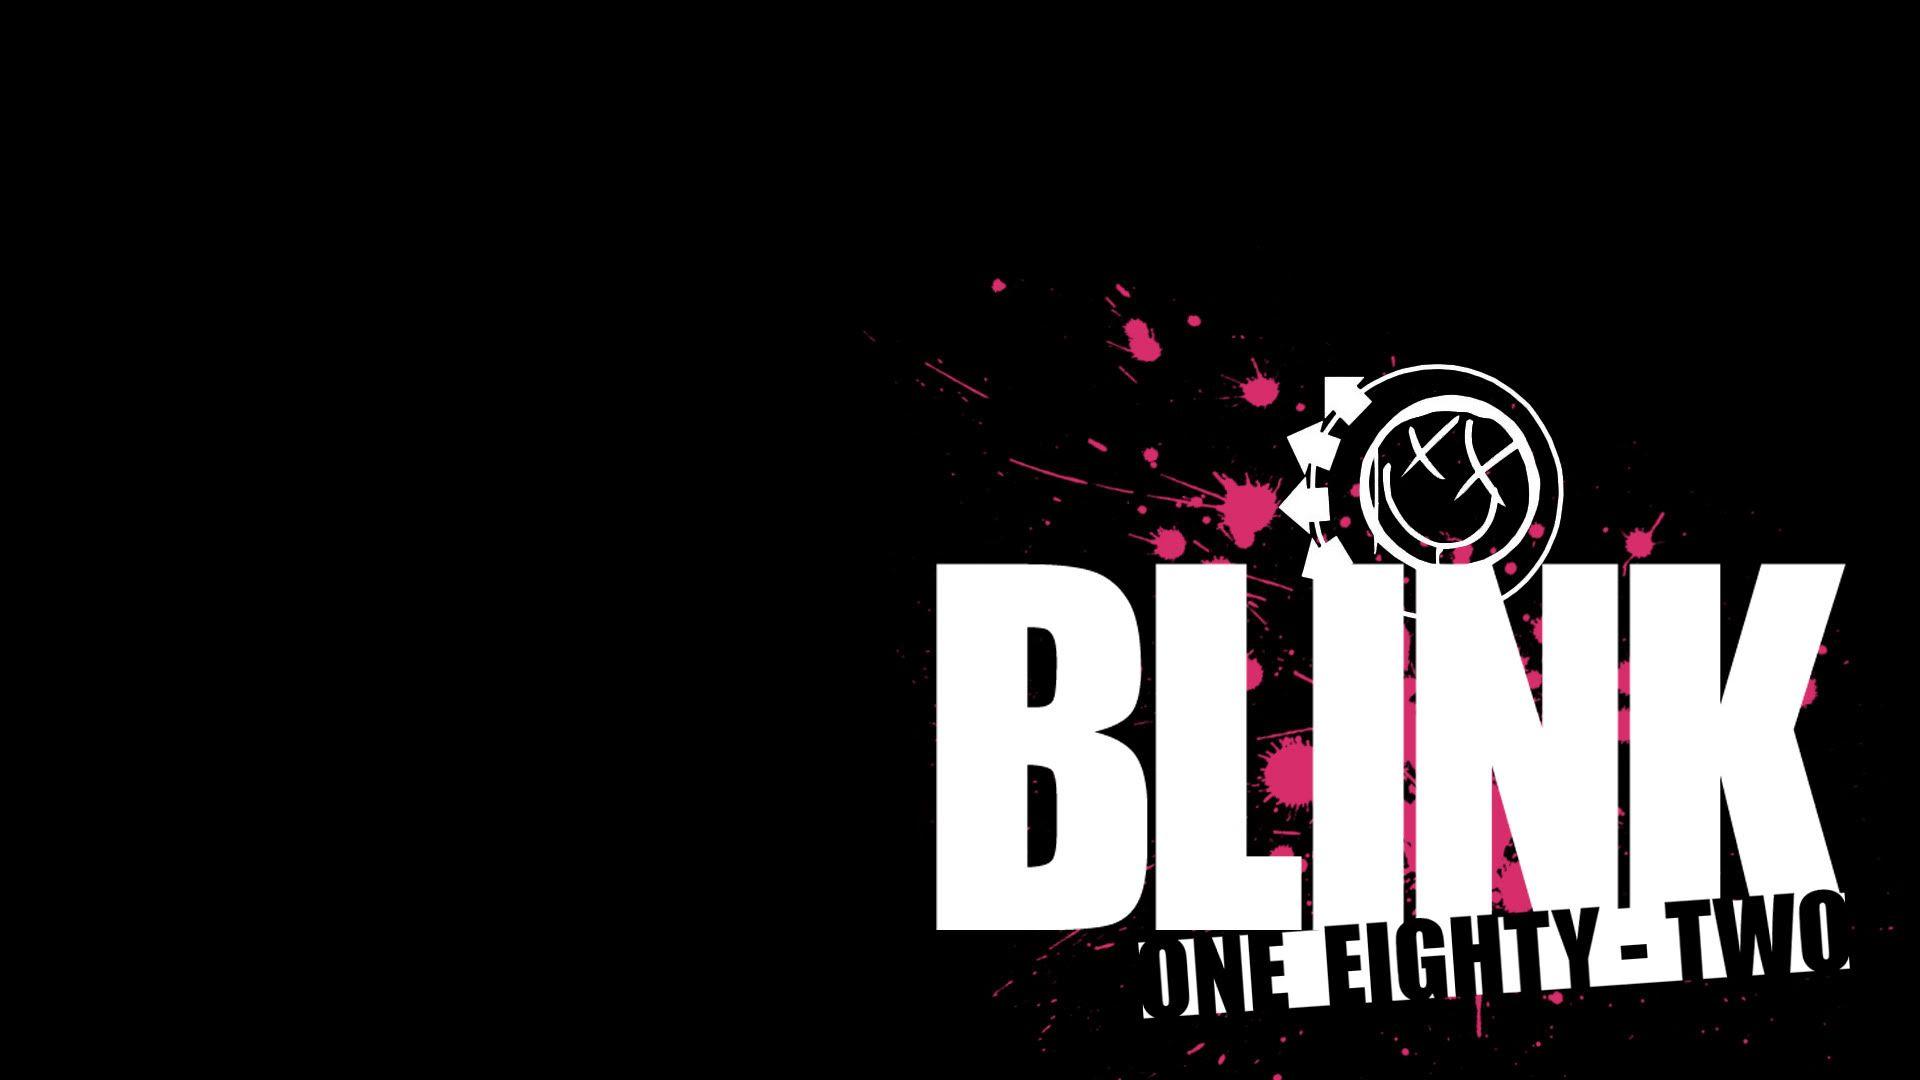 Fonds d&Blink 182 : tous les wallpapers Blink 182